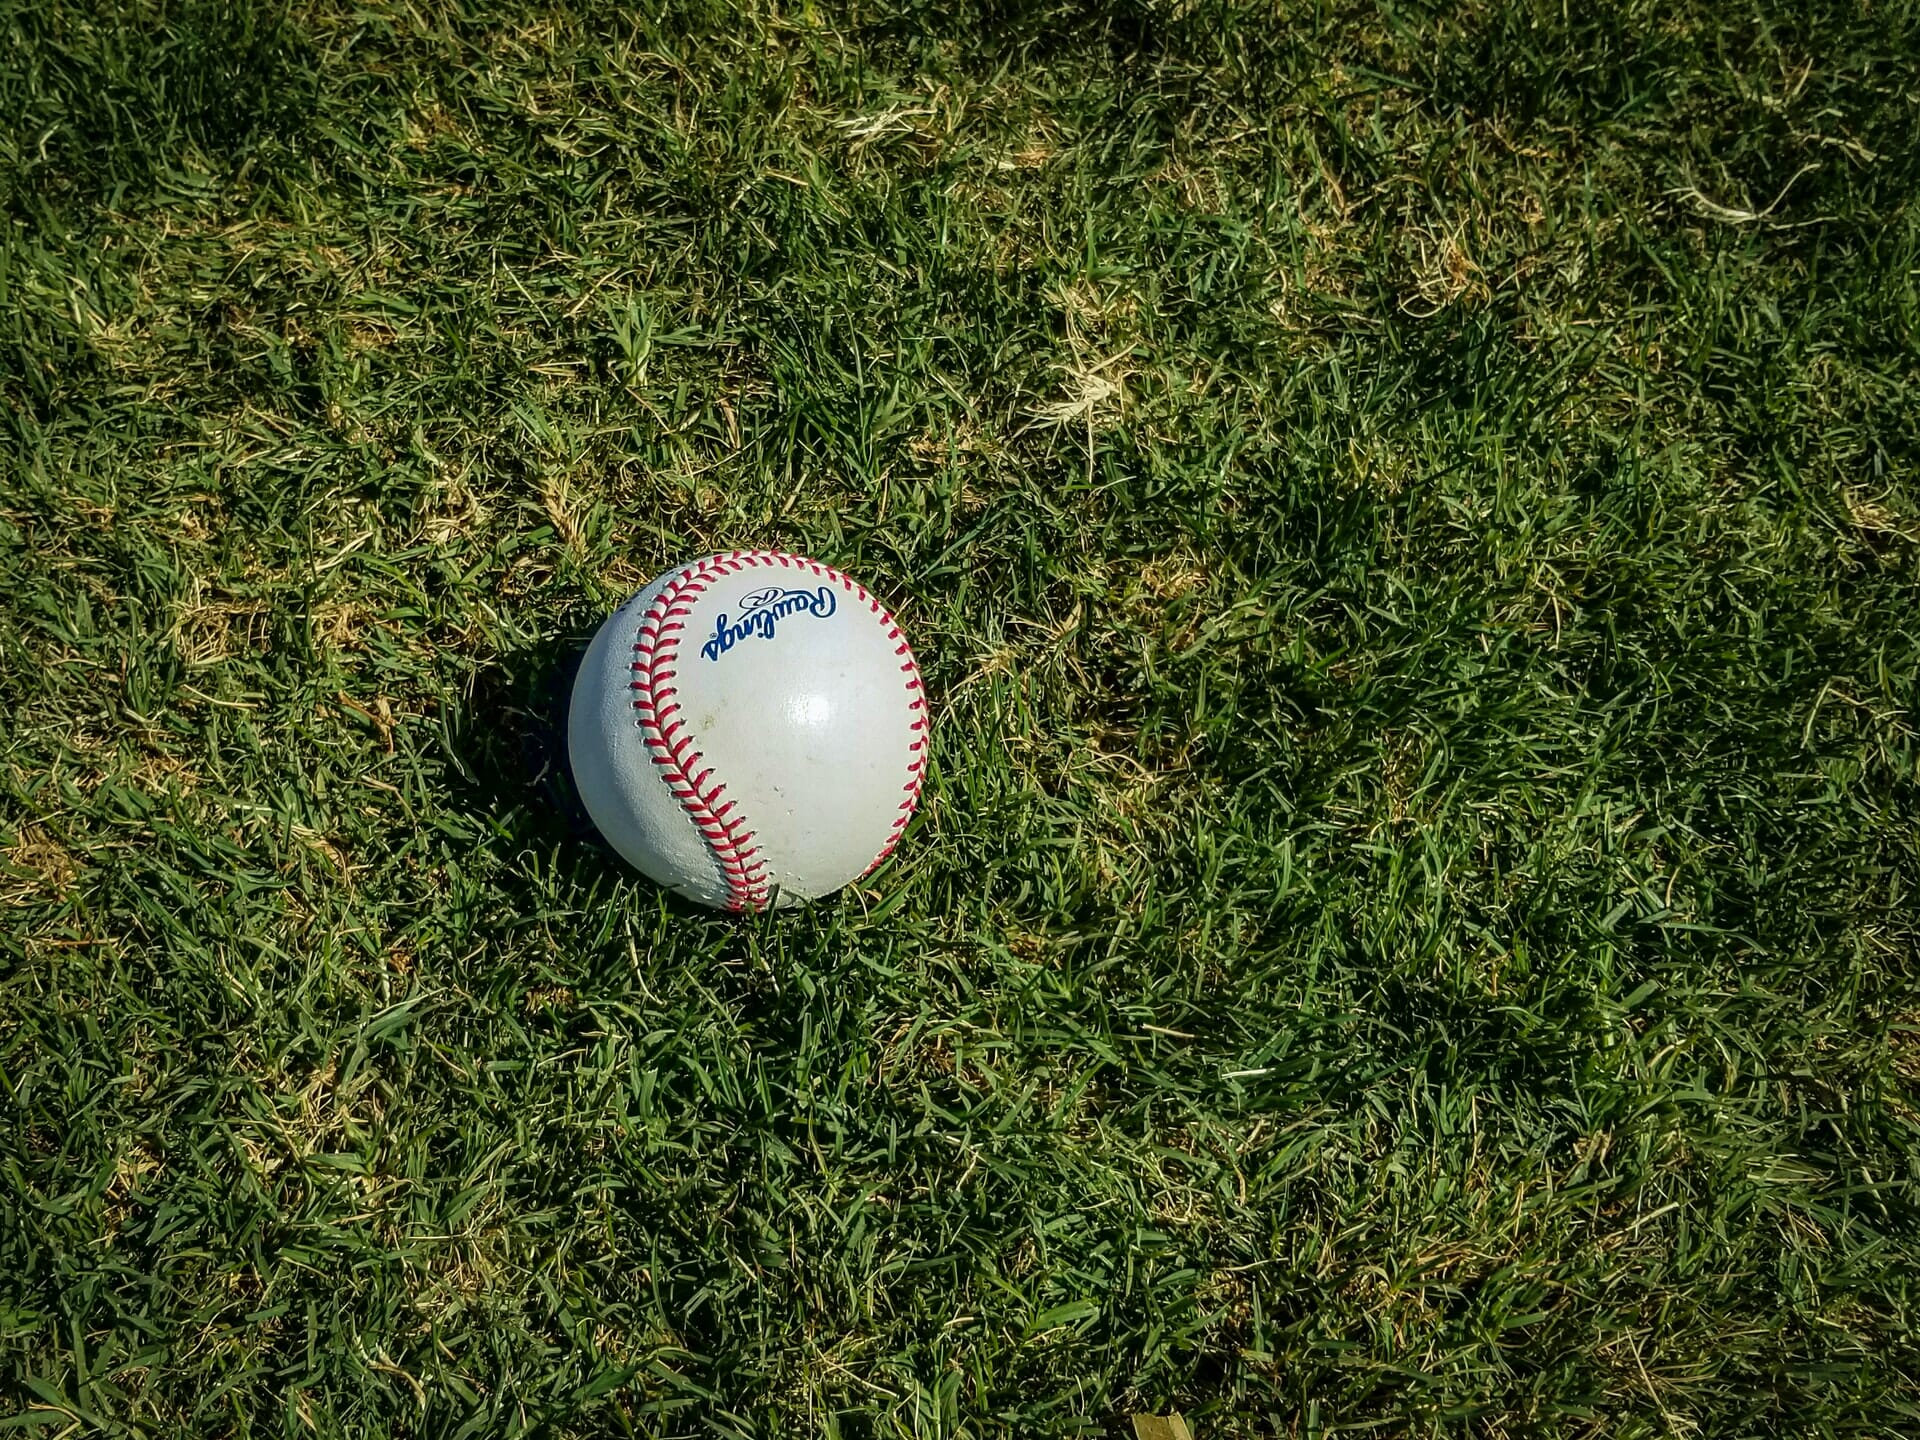 baseball on grass